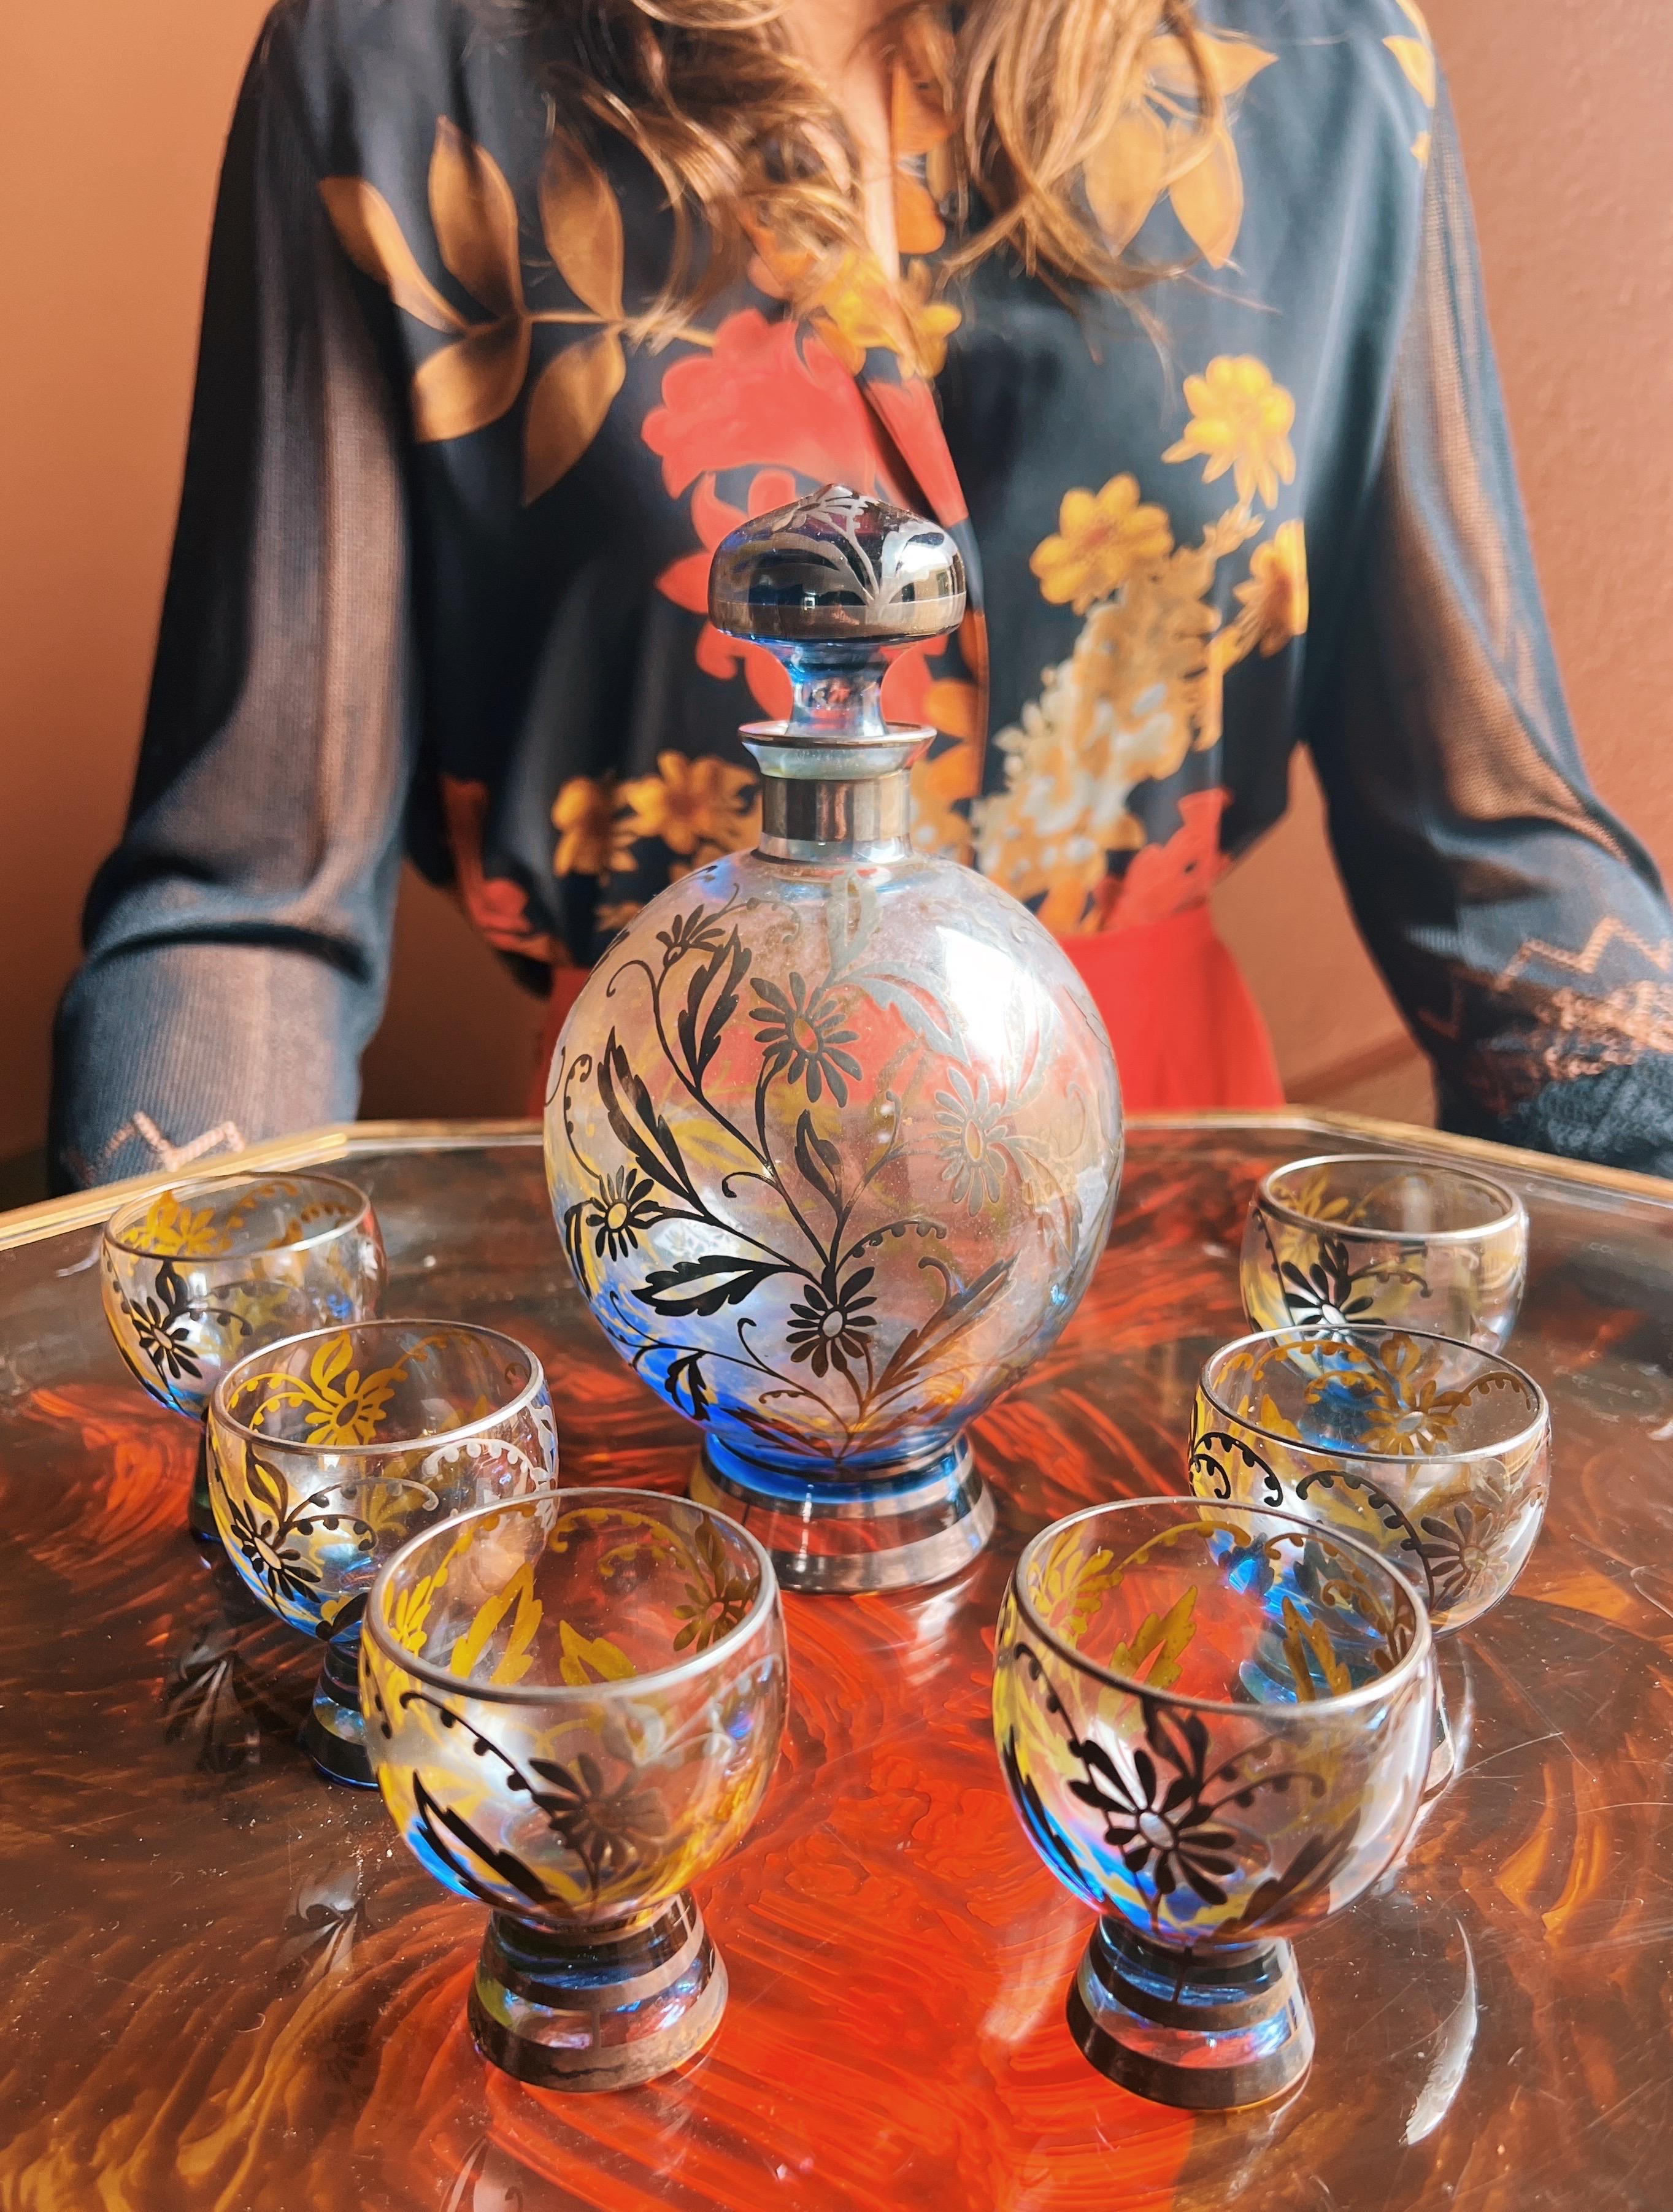 Sehen Sie sich dieses erstaunliche Set an - sechs Gläser mit einer passenden Flasche, alle aus wunderschönem venezianischem Kunstglas mit verschlungenen Blumenmustern in 925er Silber. Sie werden einen Hauch von Blau im Glas bemerken. 

Diese Gläser